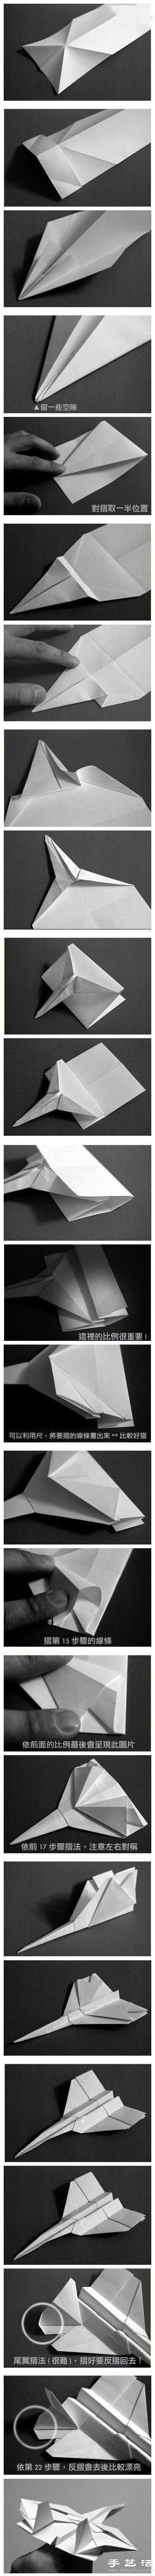 手工折纸制作超逼真隐形战斗机